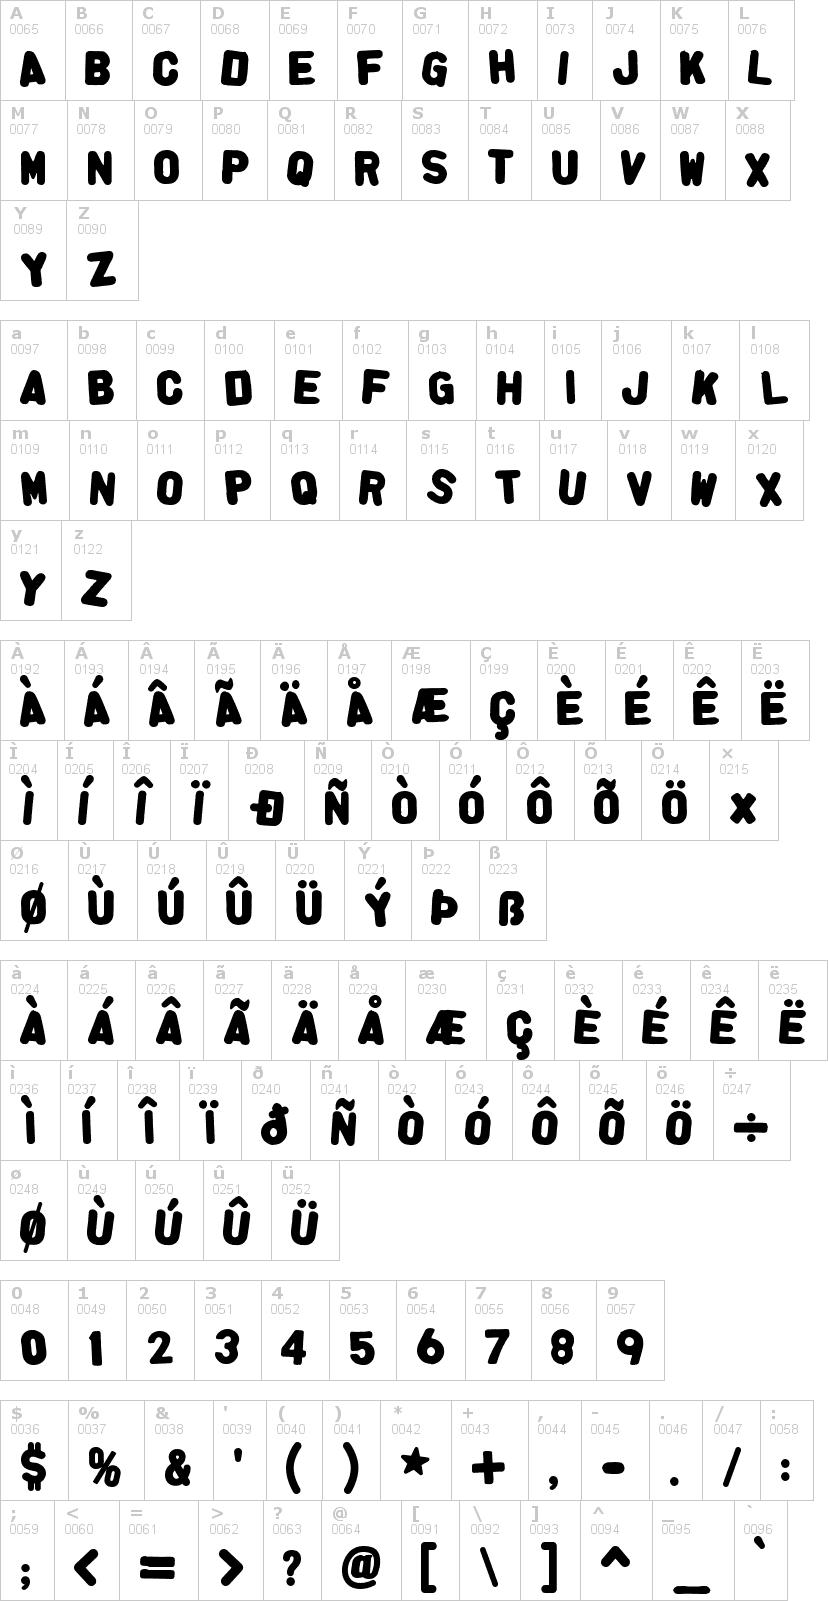 Lettere dell'alfabeto del font alpha-fridge-magnets con le quali è possibile realizzare adesivi prespaziati